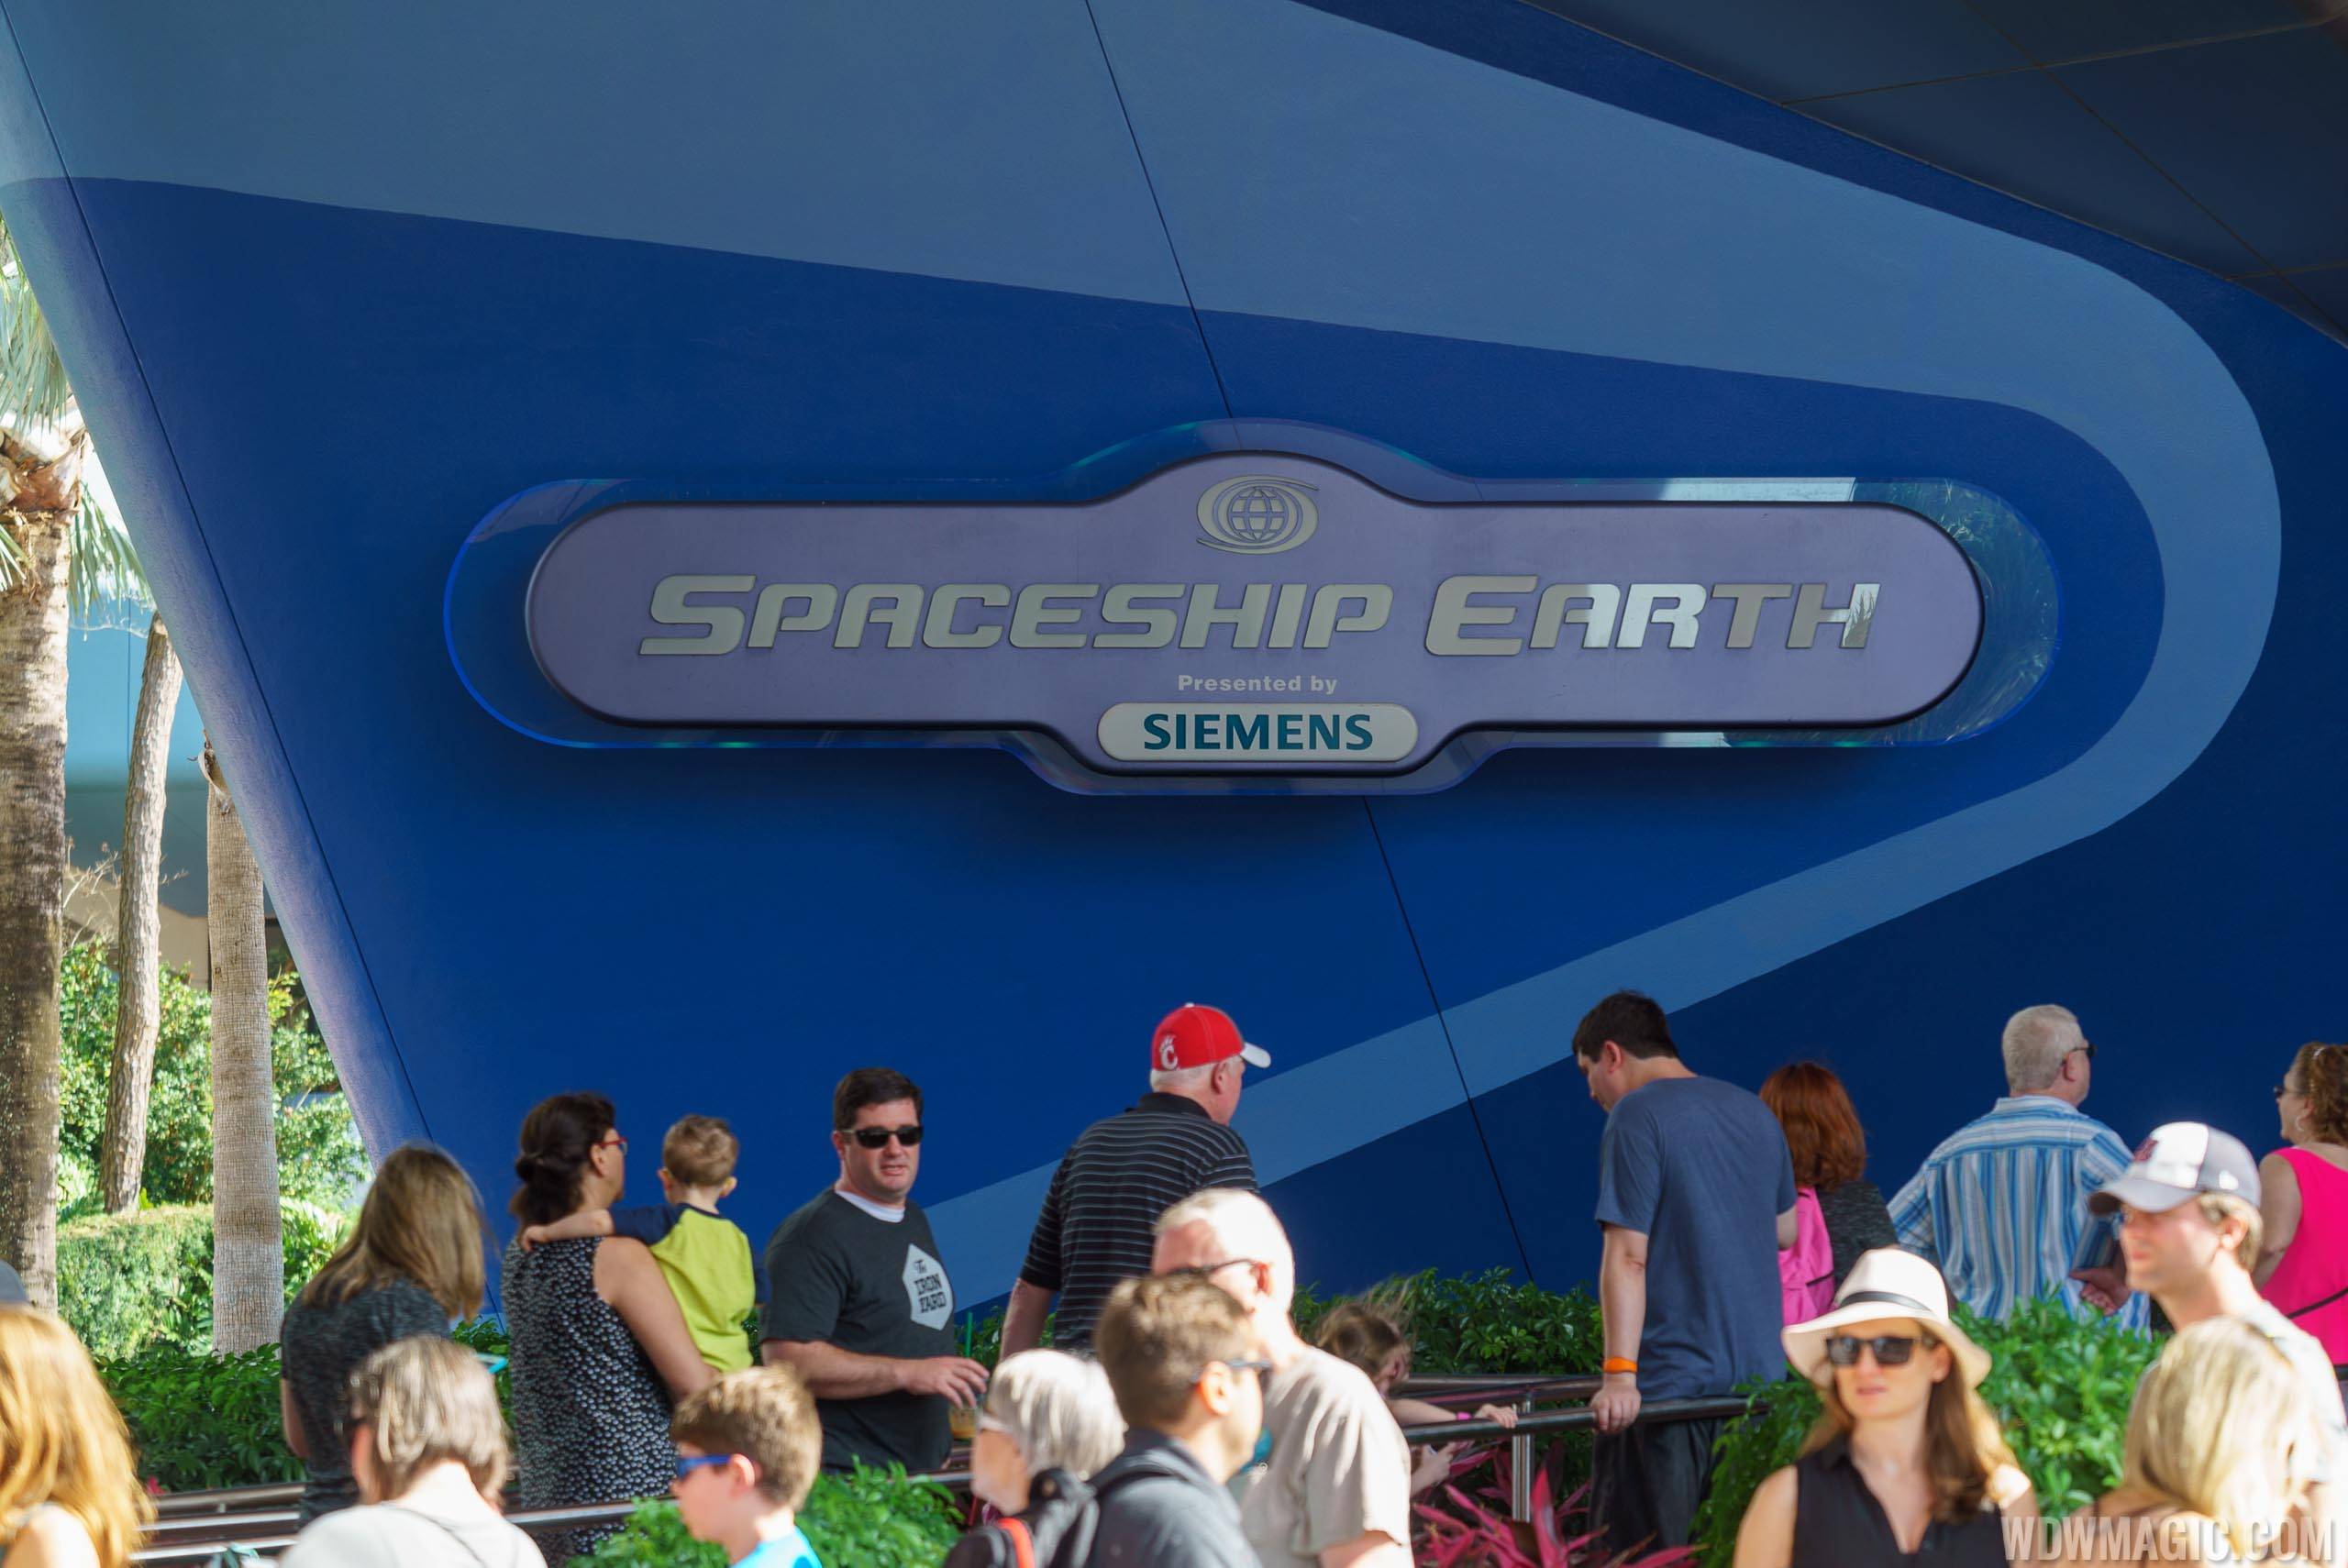 Removal of Siemens sponsorship underway at Spaceship Earth